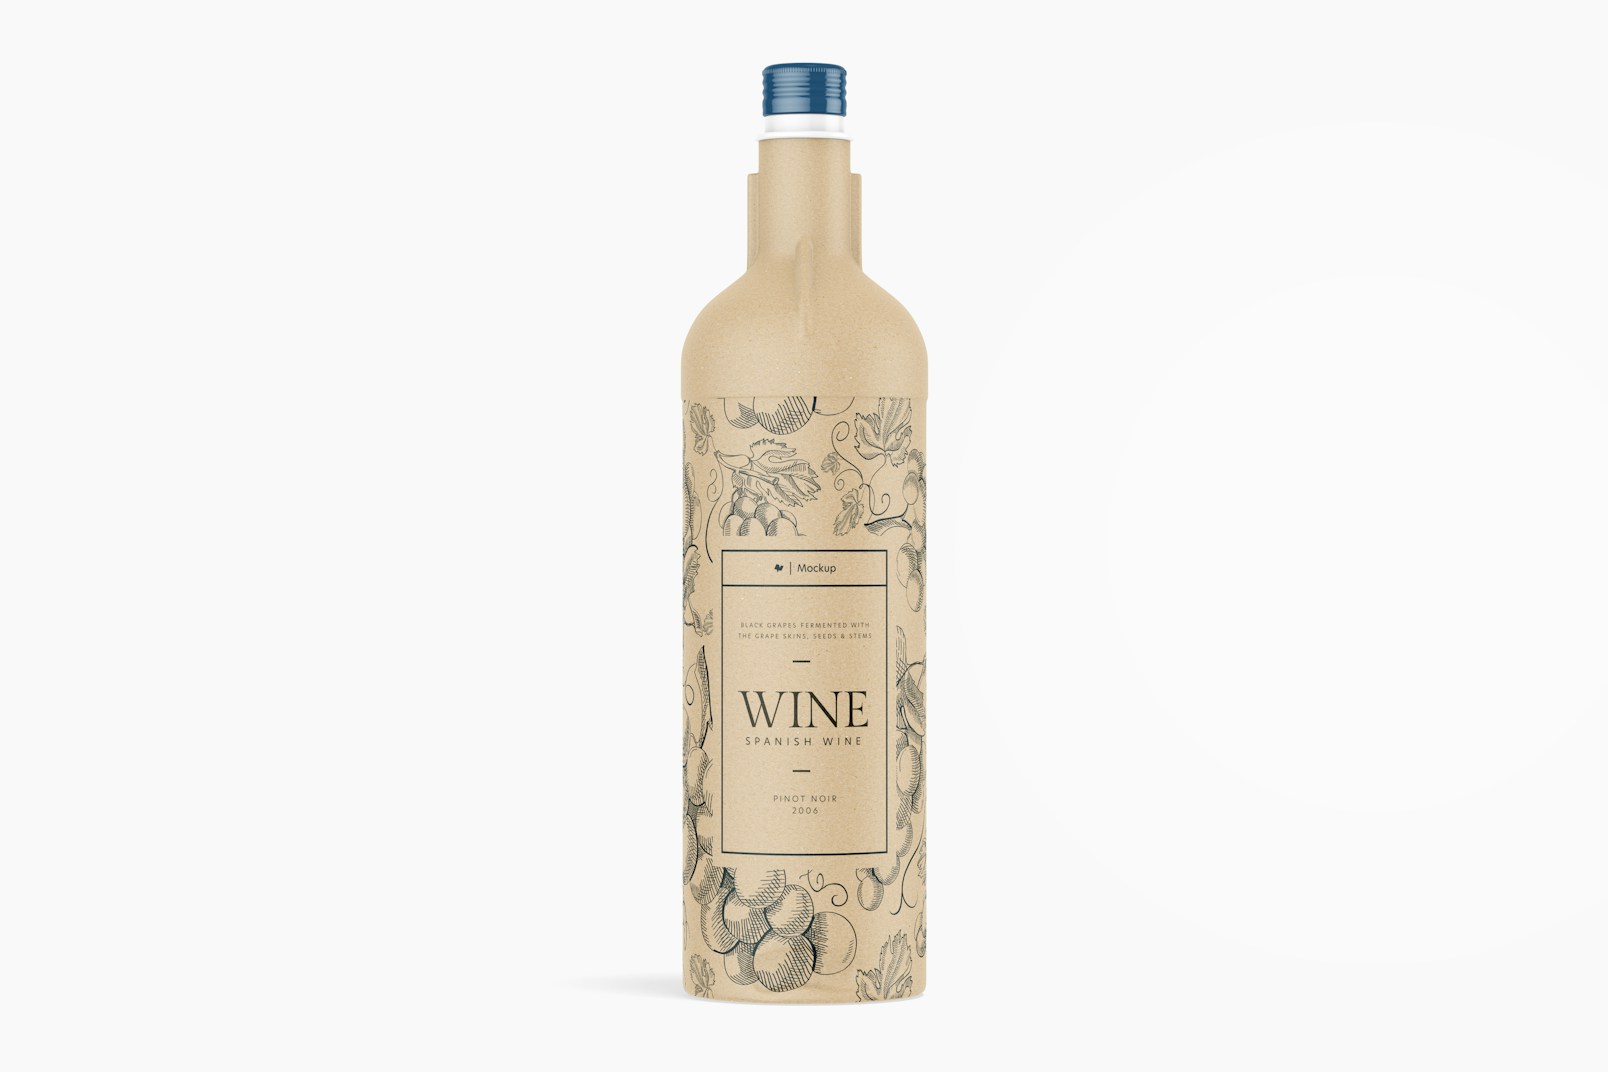 Cardboard Wine Bottle Mockup, Front View